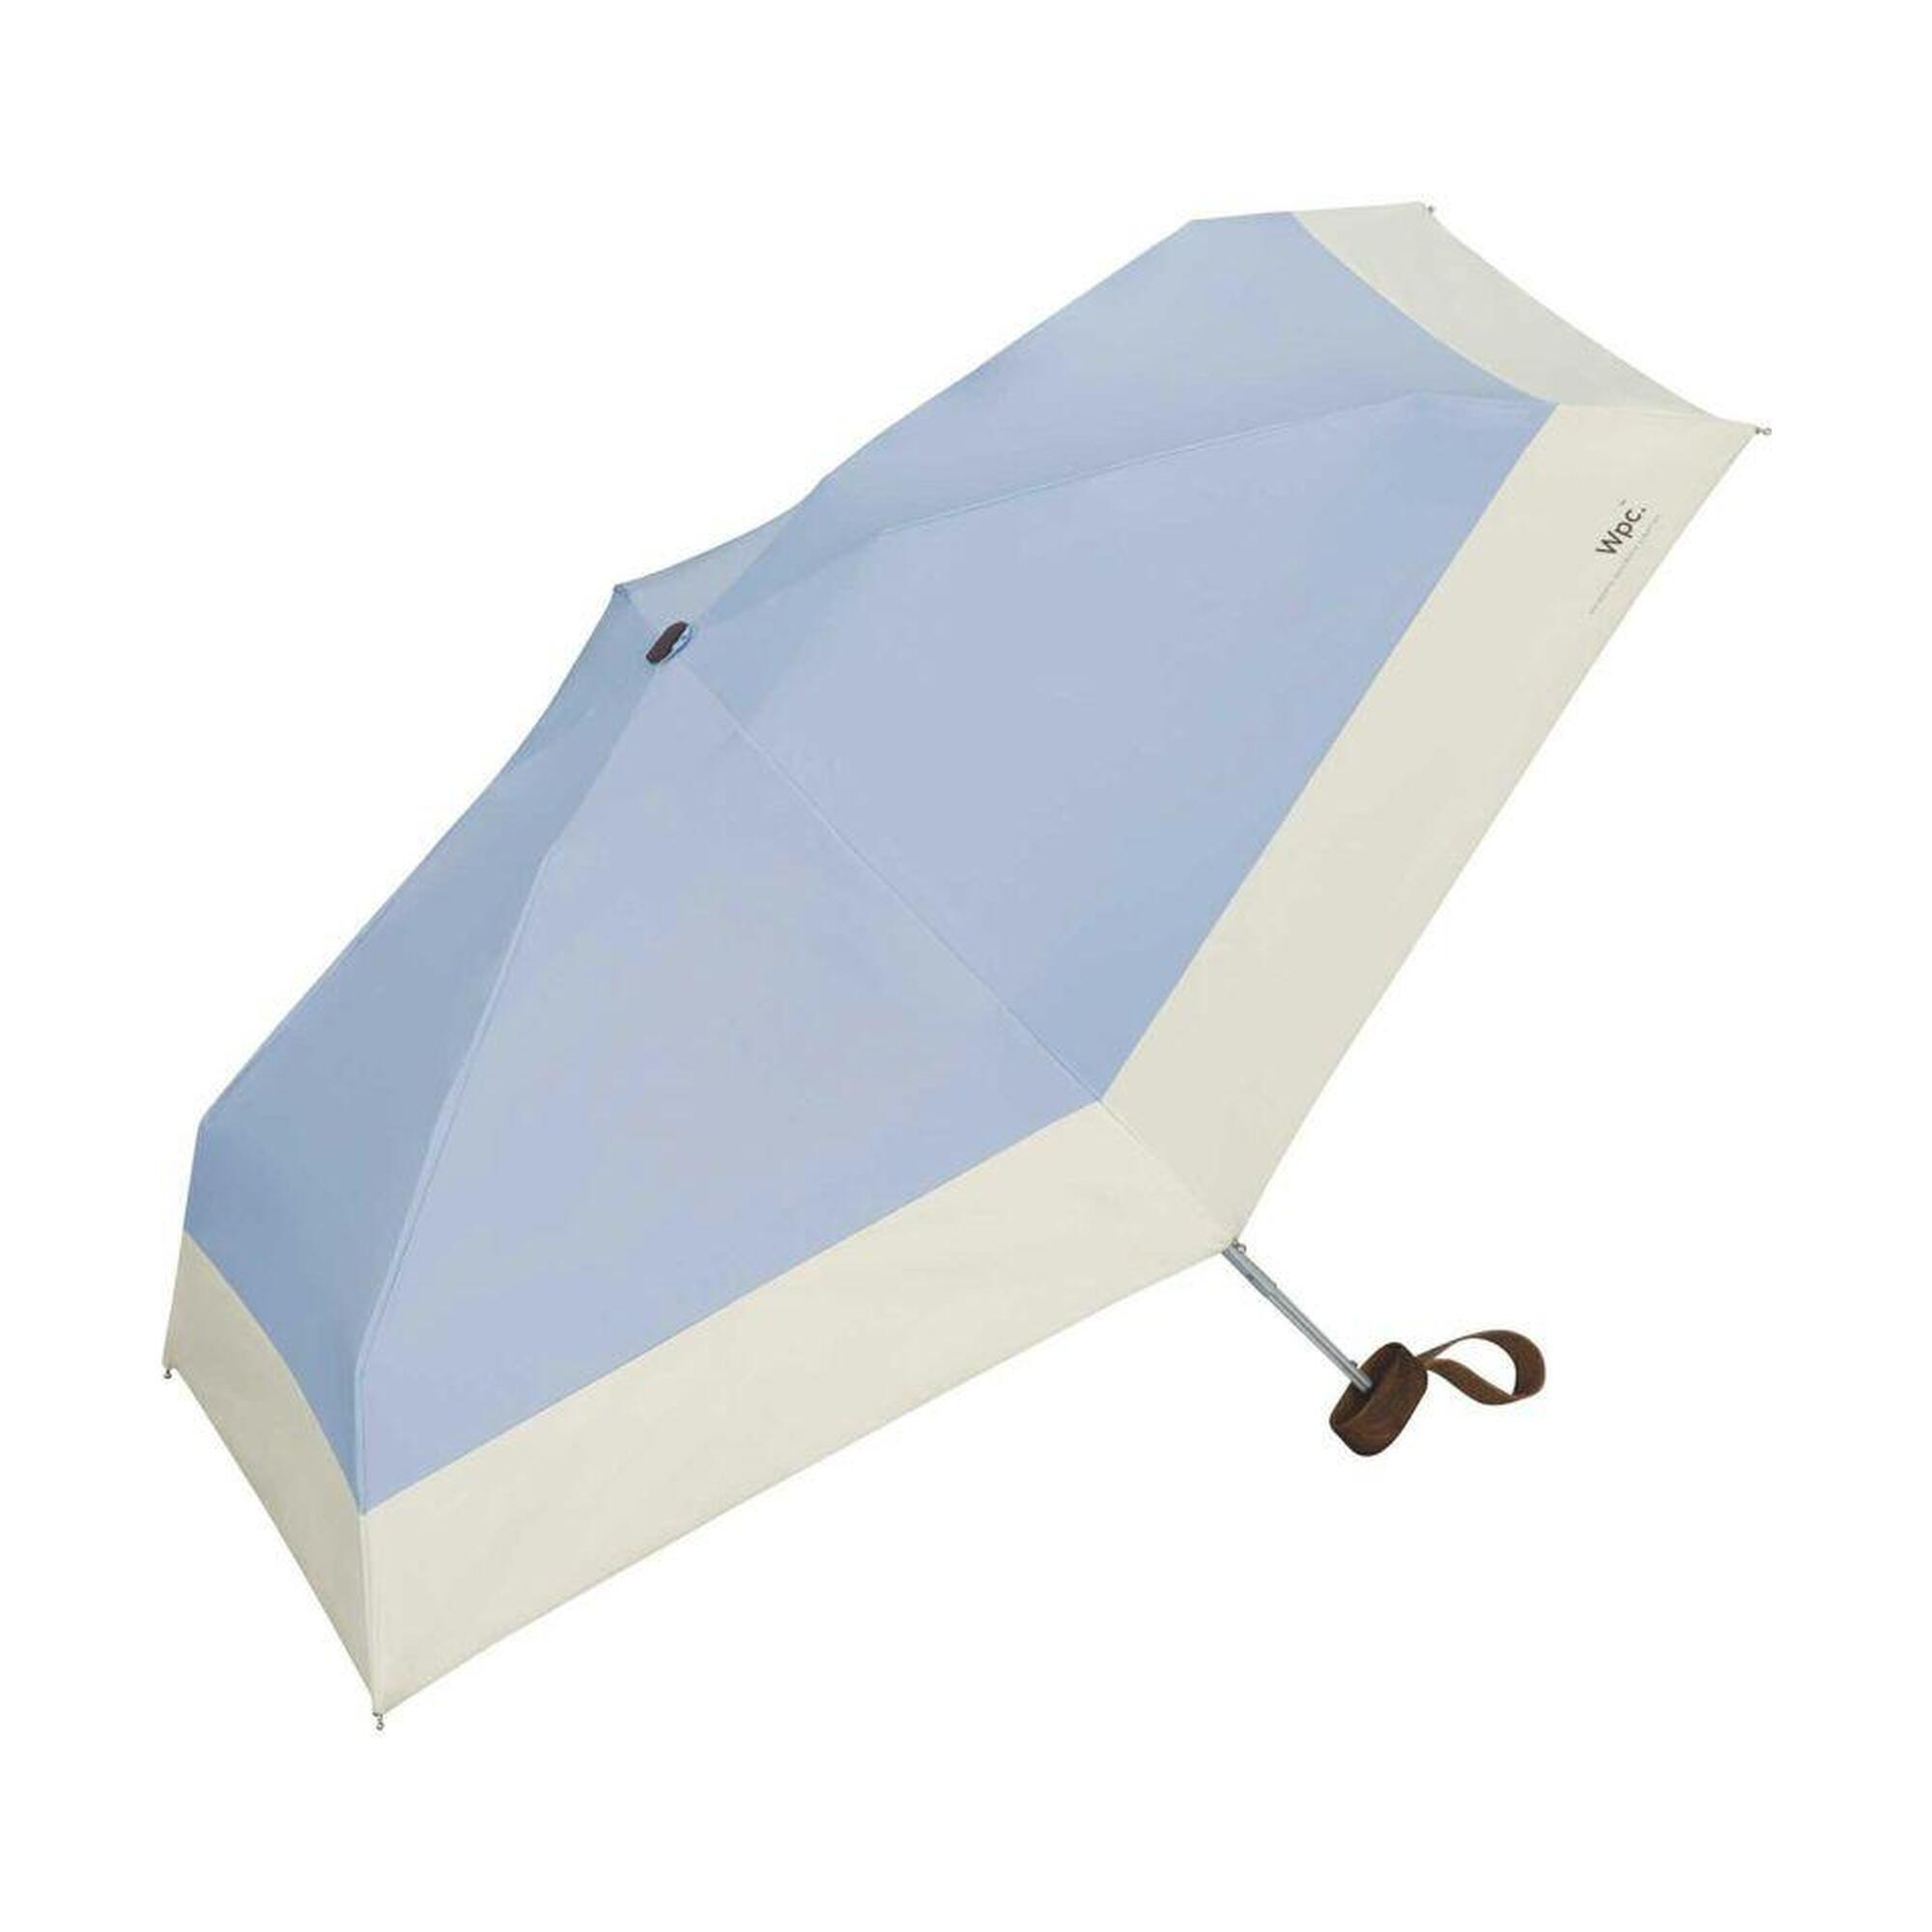 801-6423 防紫外光縮骨雨傘 - 天藍色